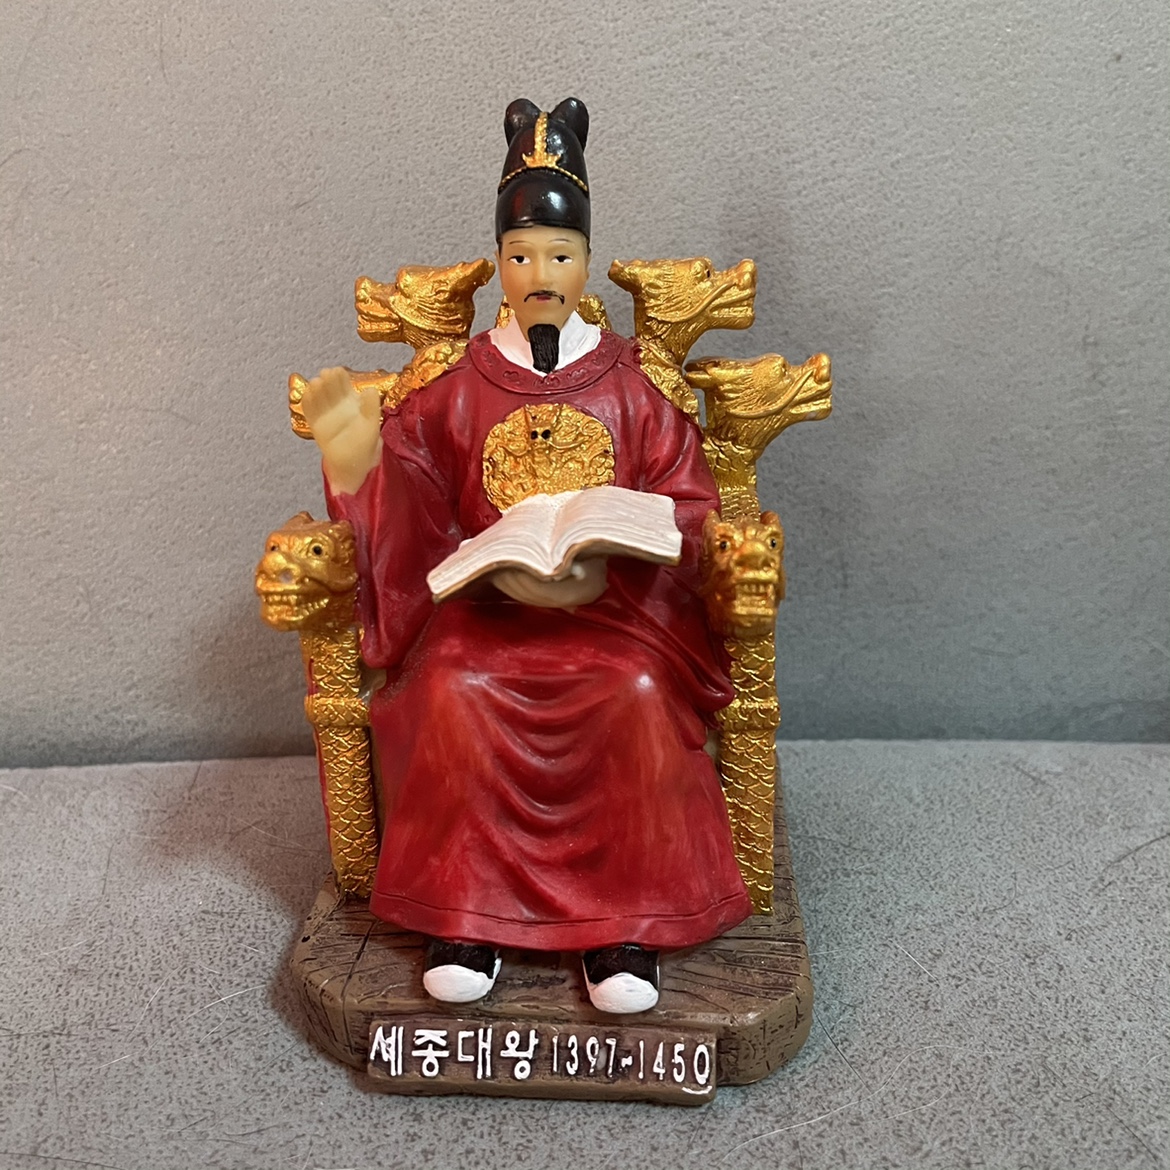 创意树脂工艺品韩国世宗大王仿真人物模型办公室书房手办公仔收藏